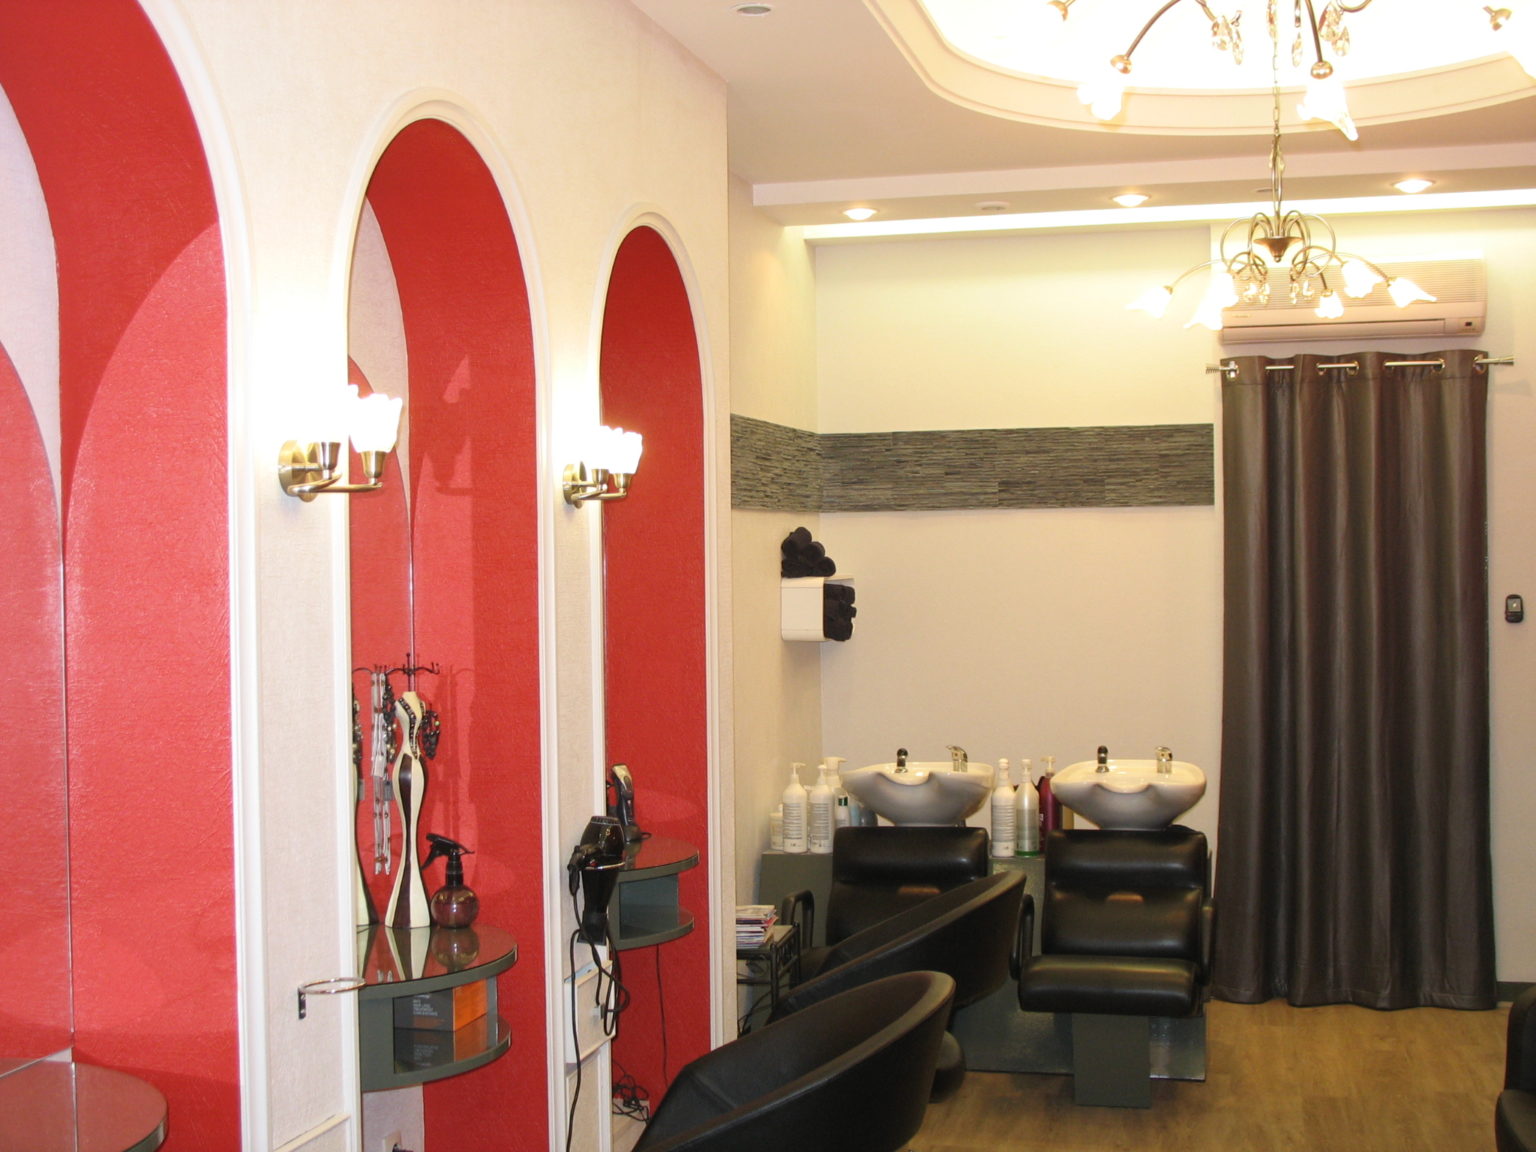 Photographie dans un salon de coiffure où les murs ont été repeints en blanc et des alcoves en rouge